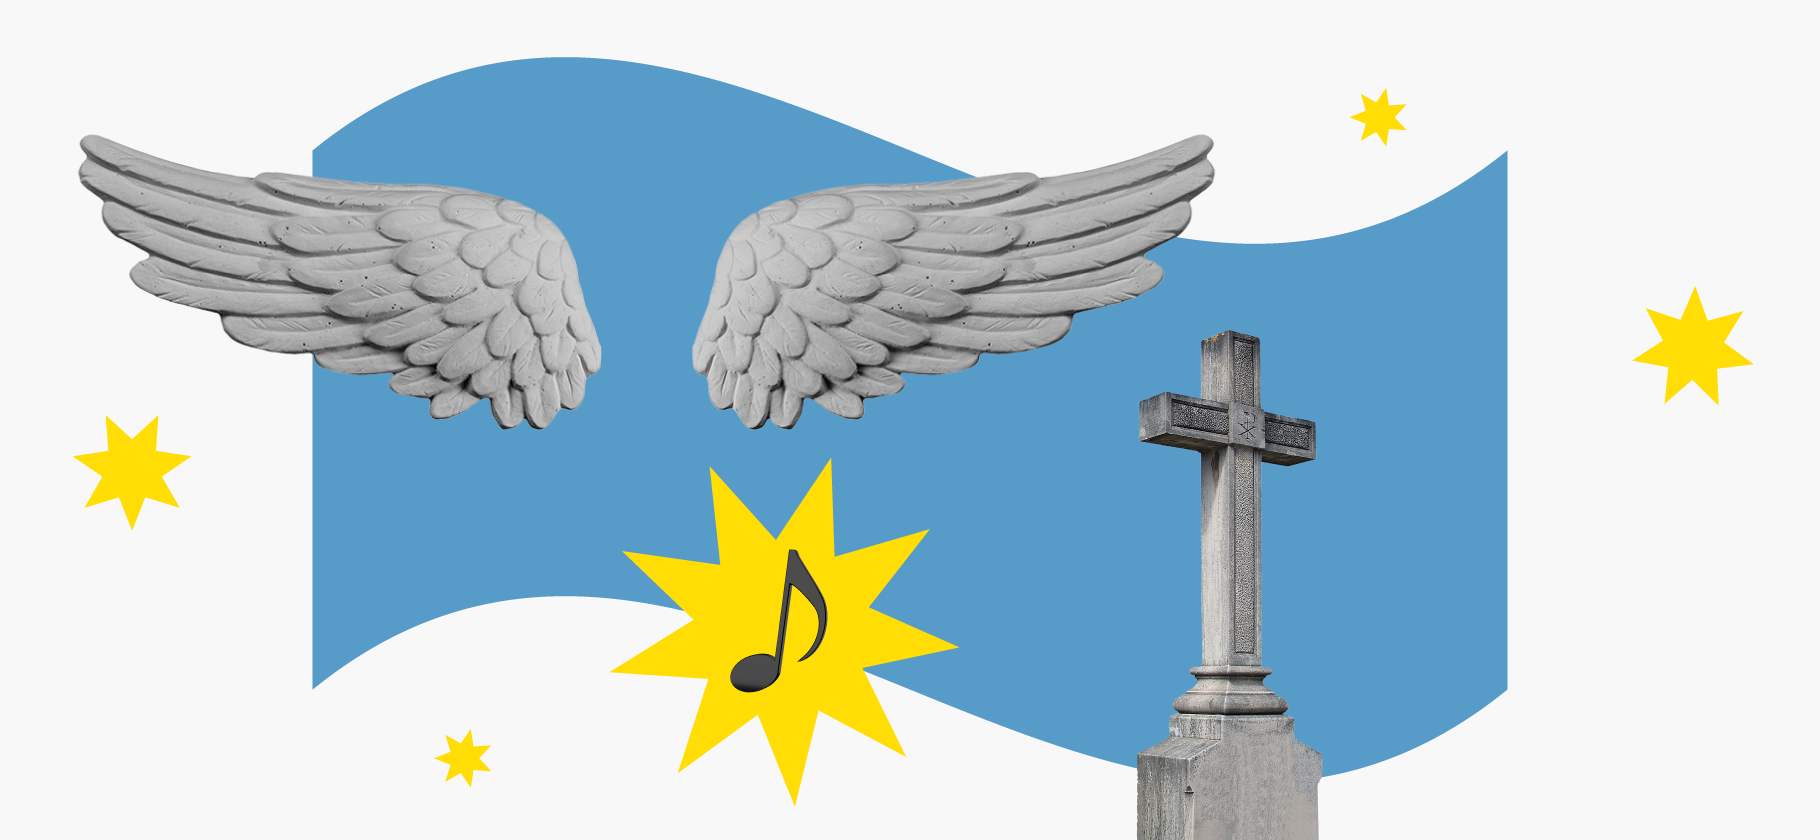 Какая музыка будет звучать на ваших похоронах?